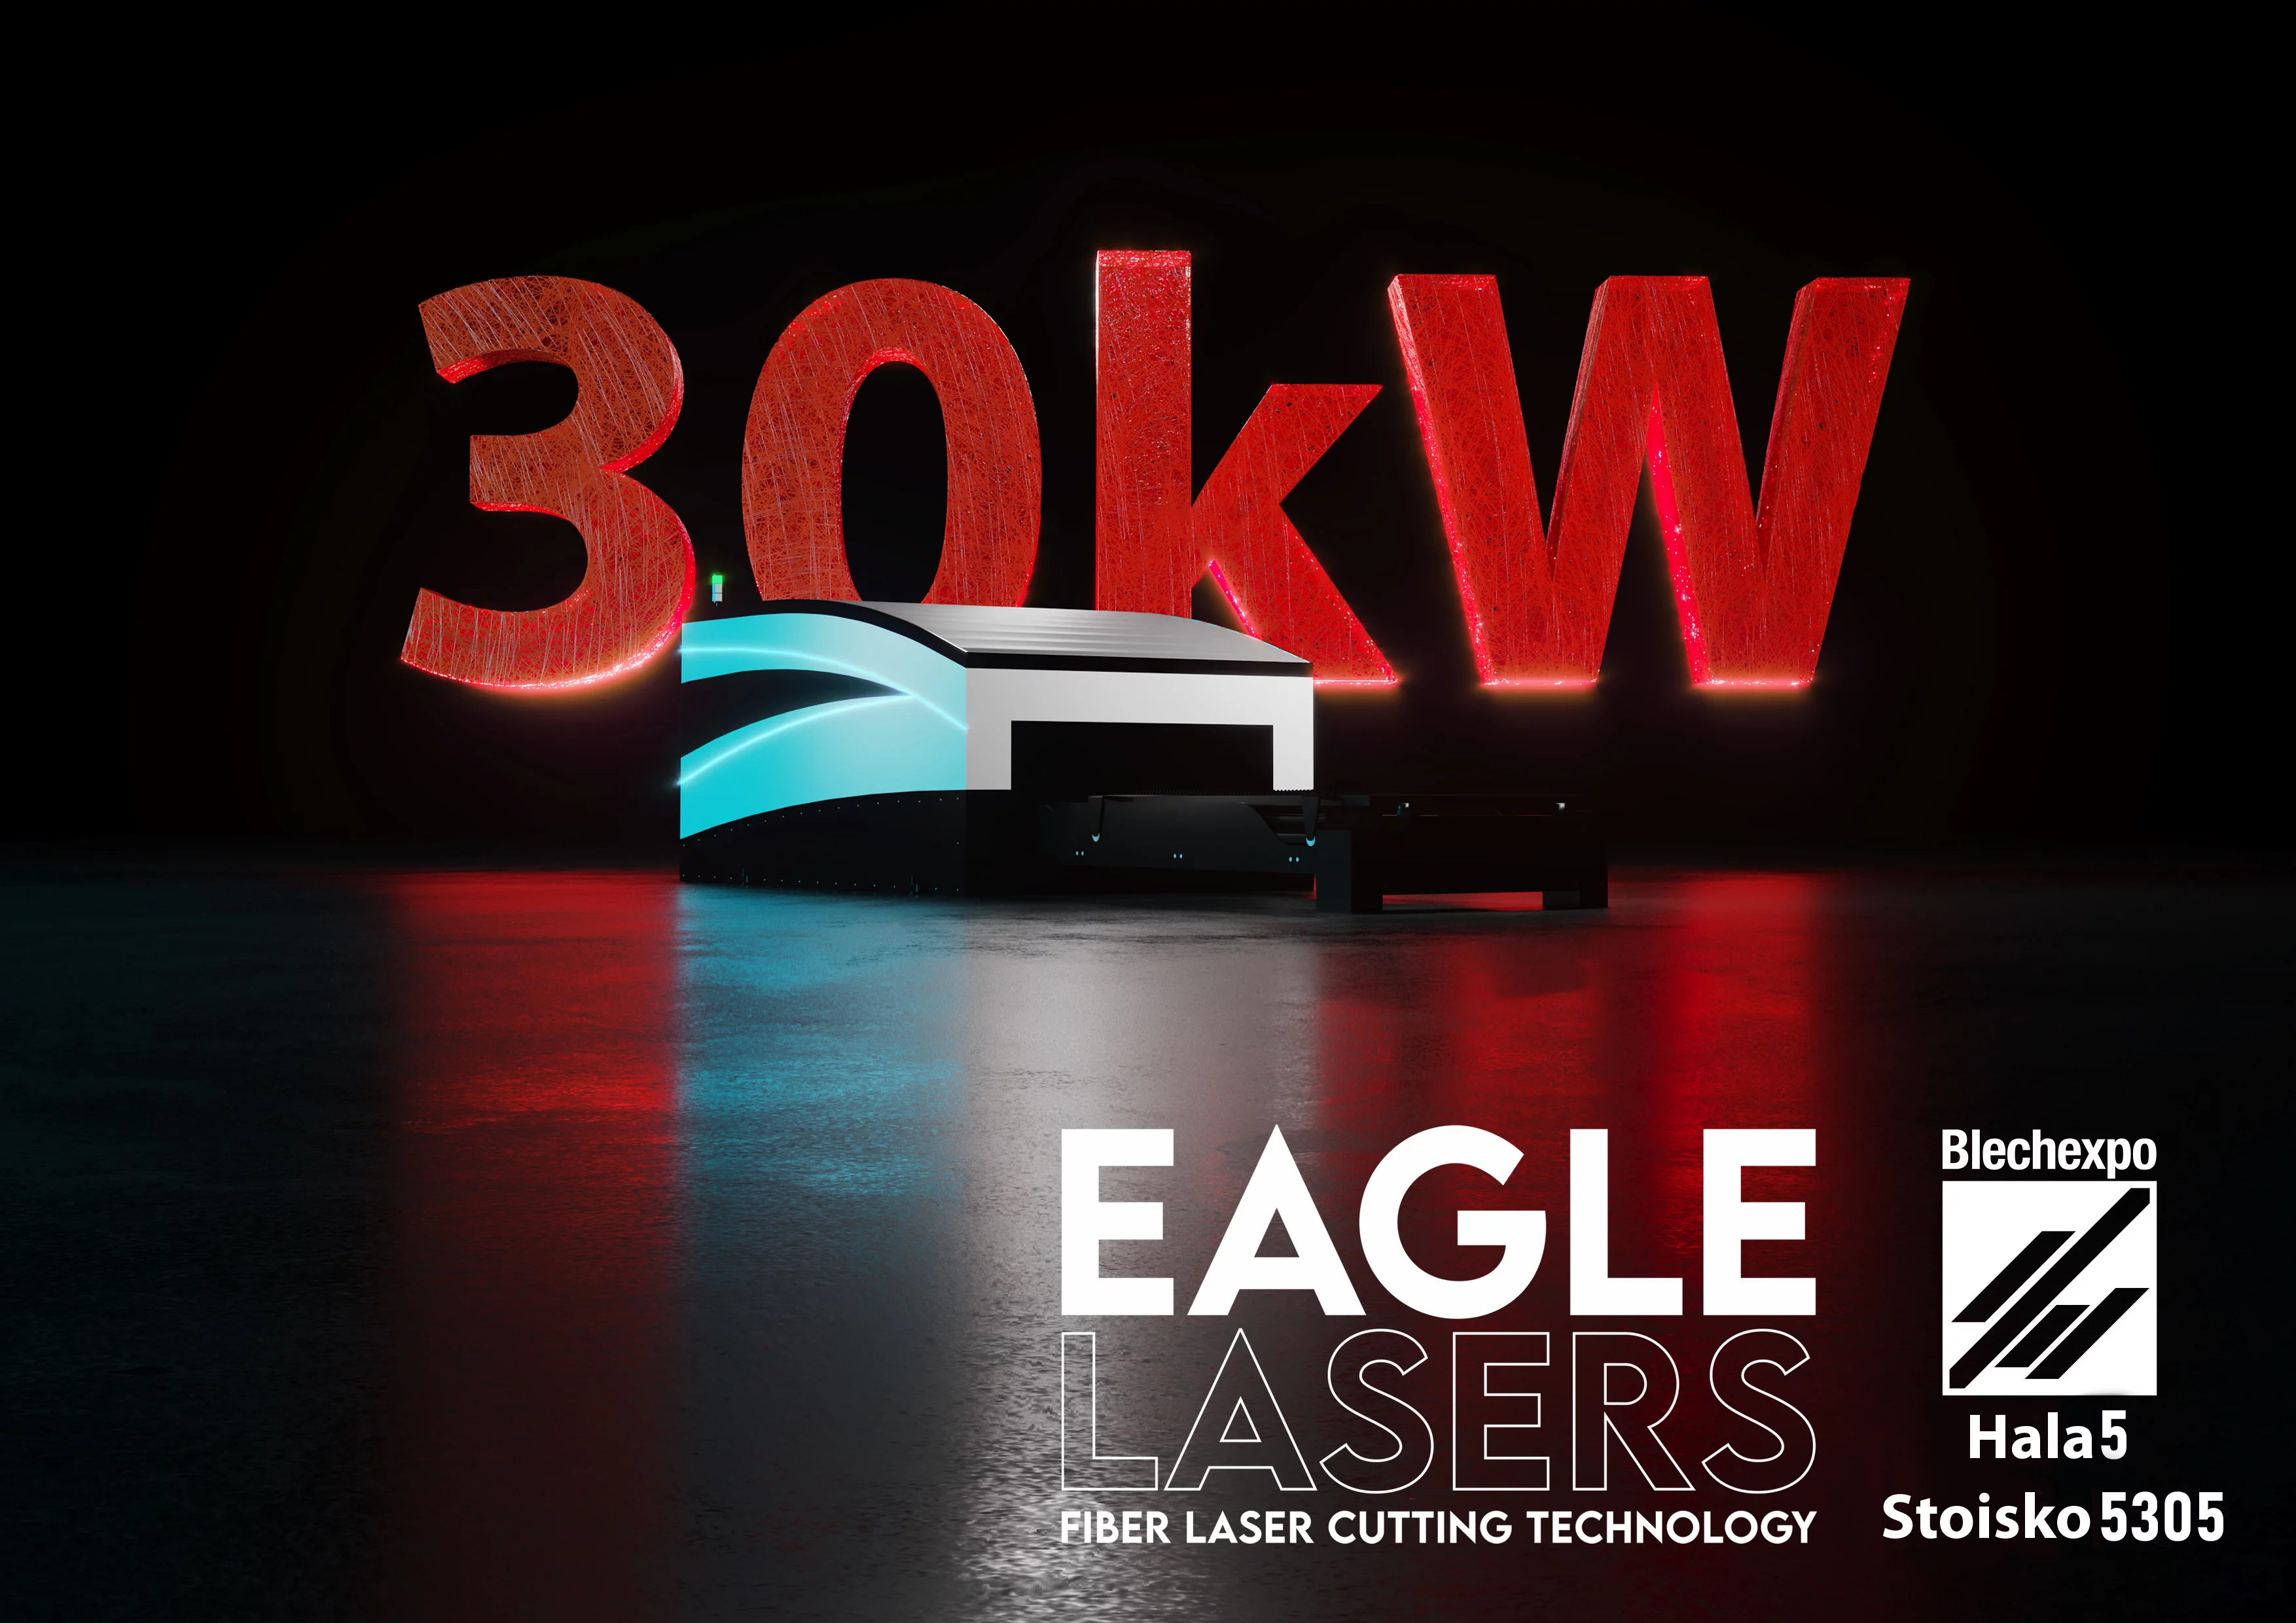 Blechexpo 2021: EAGLE LASERS prezentuje najnowszą wycinarkę laserową iNspire o mocy 30kW.